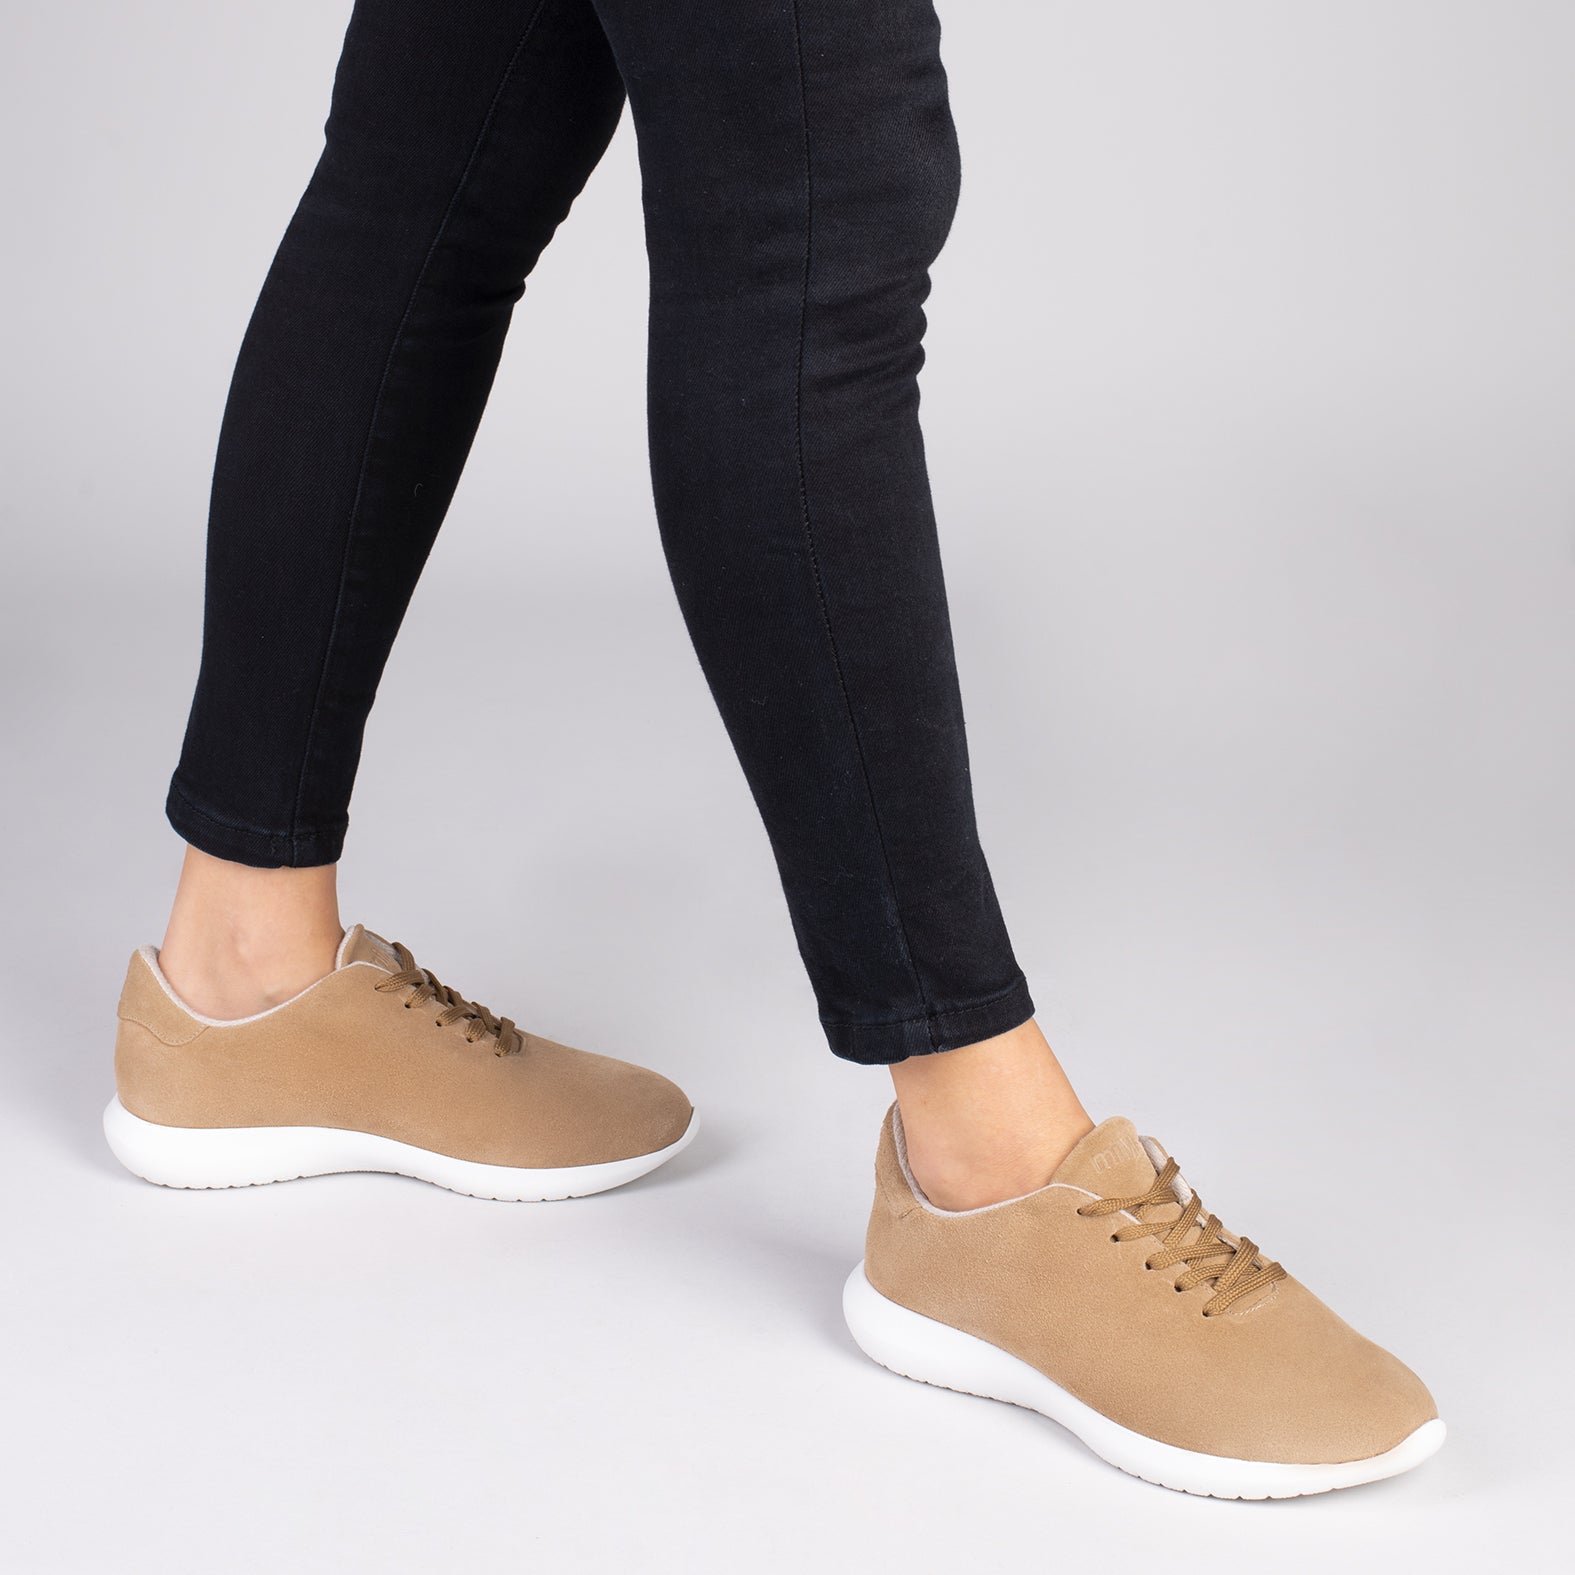 WALK – Zapatillas cómodas de mujer BEIGE